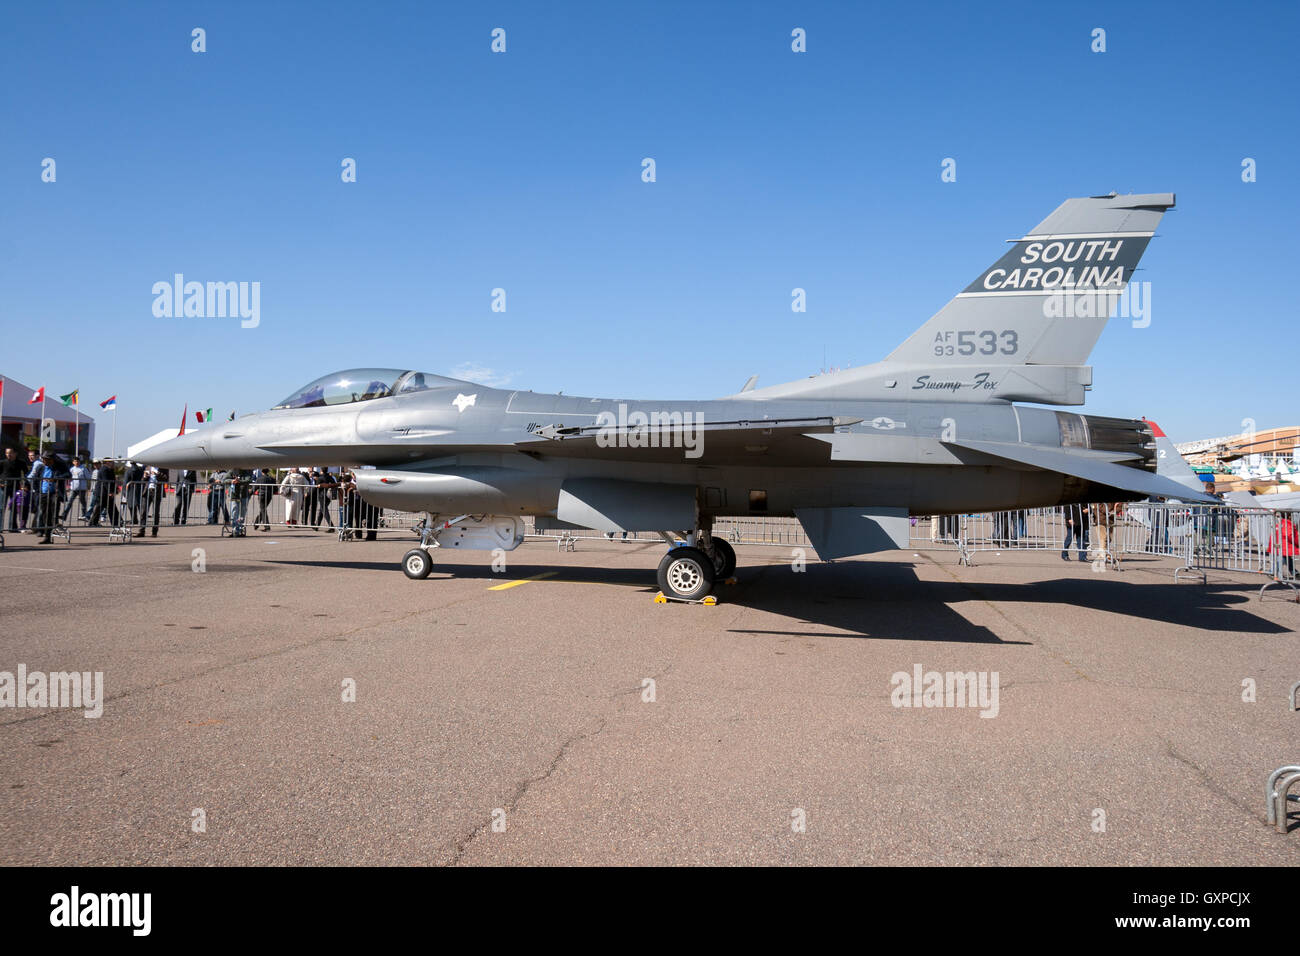 Carolina del sur de la Guardia Nacional Aérea de aviones de combate F-16 en exhibición en la expo 2010 de aire de Marrakech Foto de stock